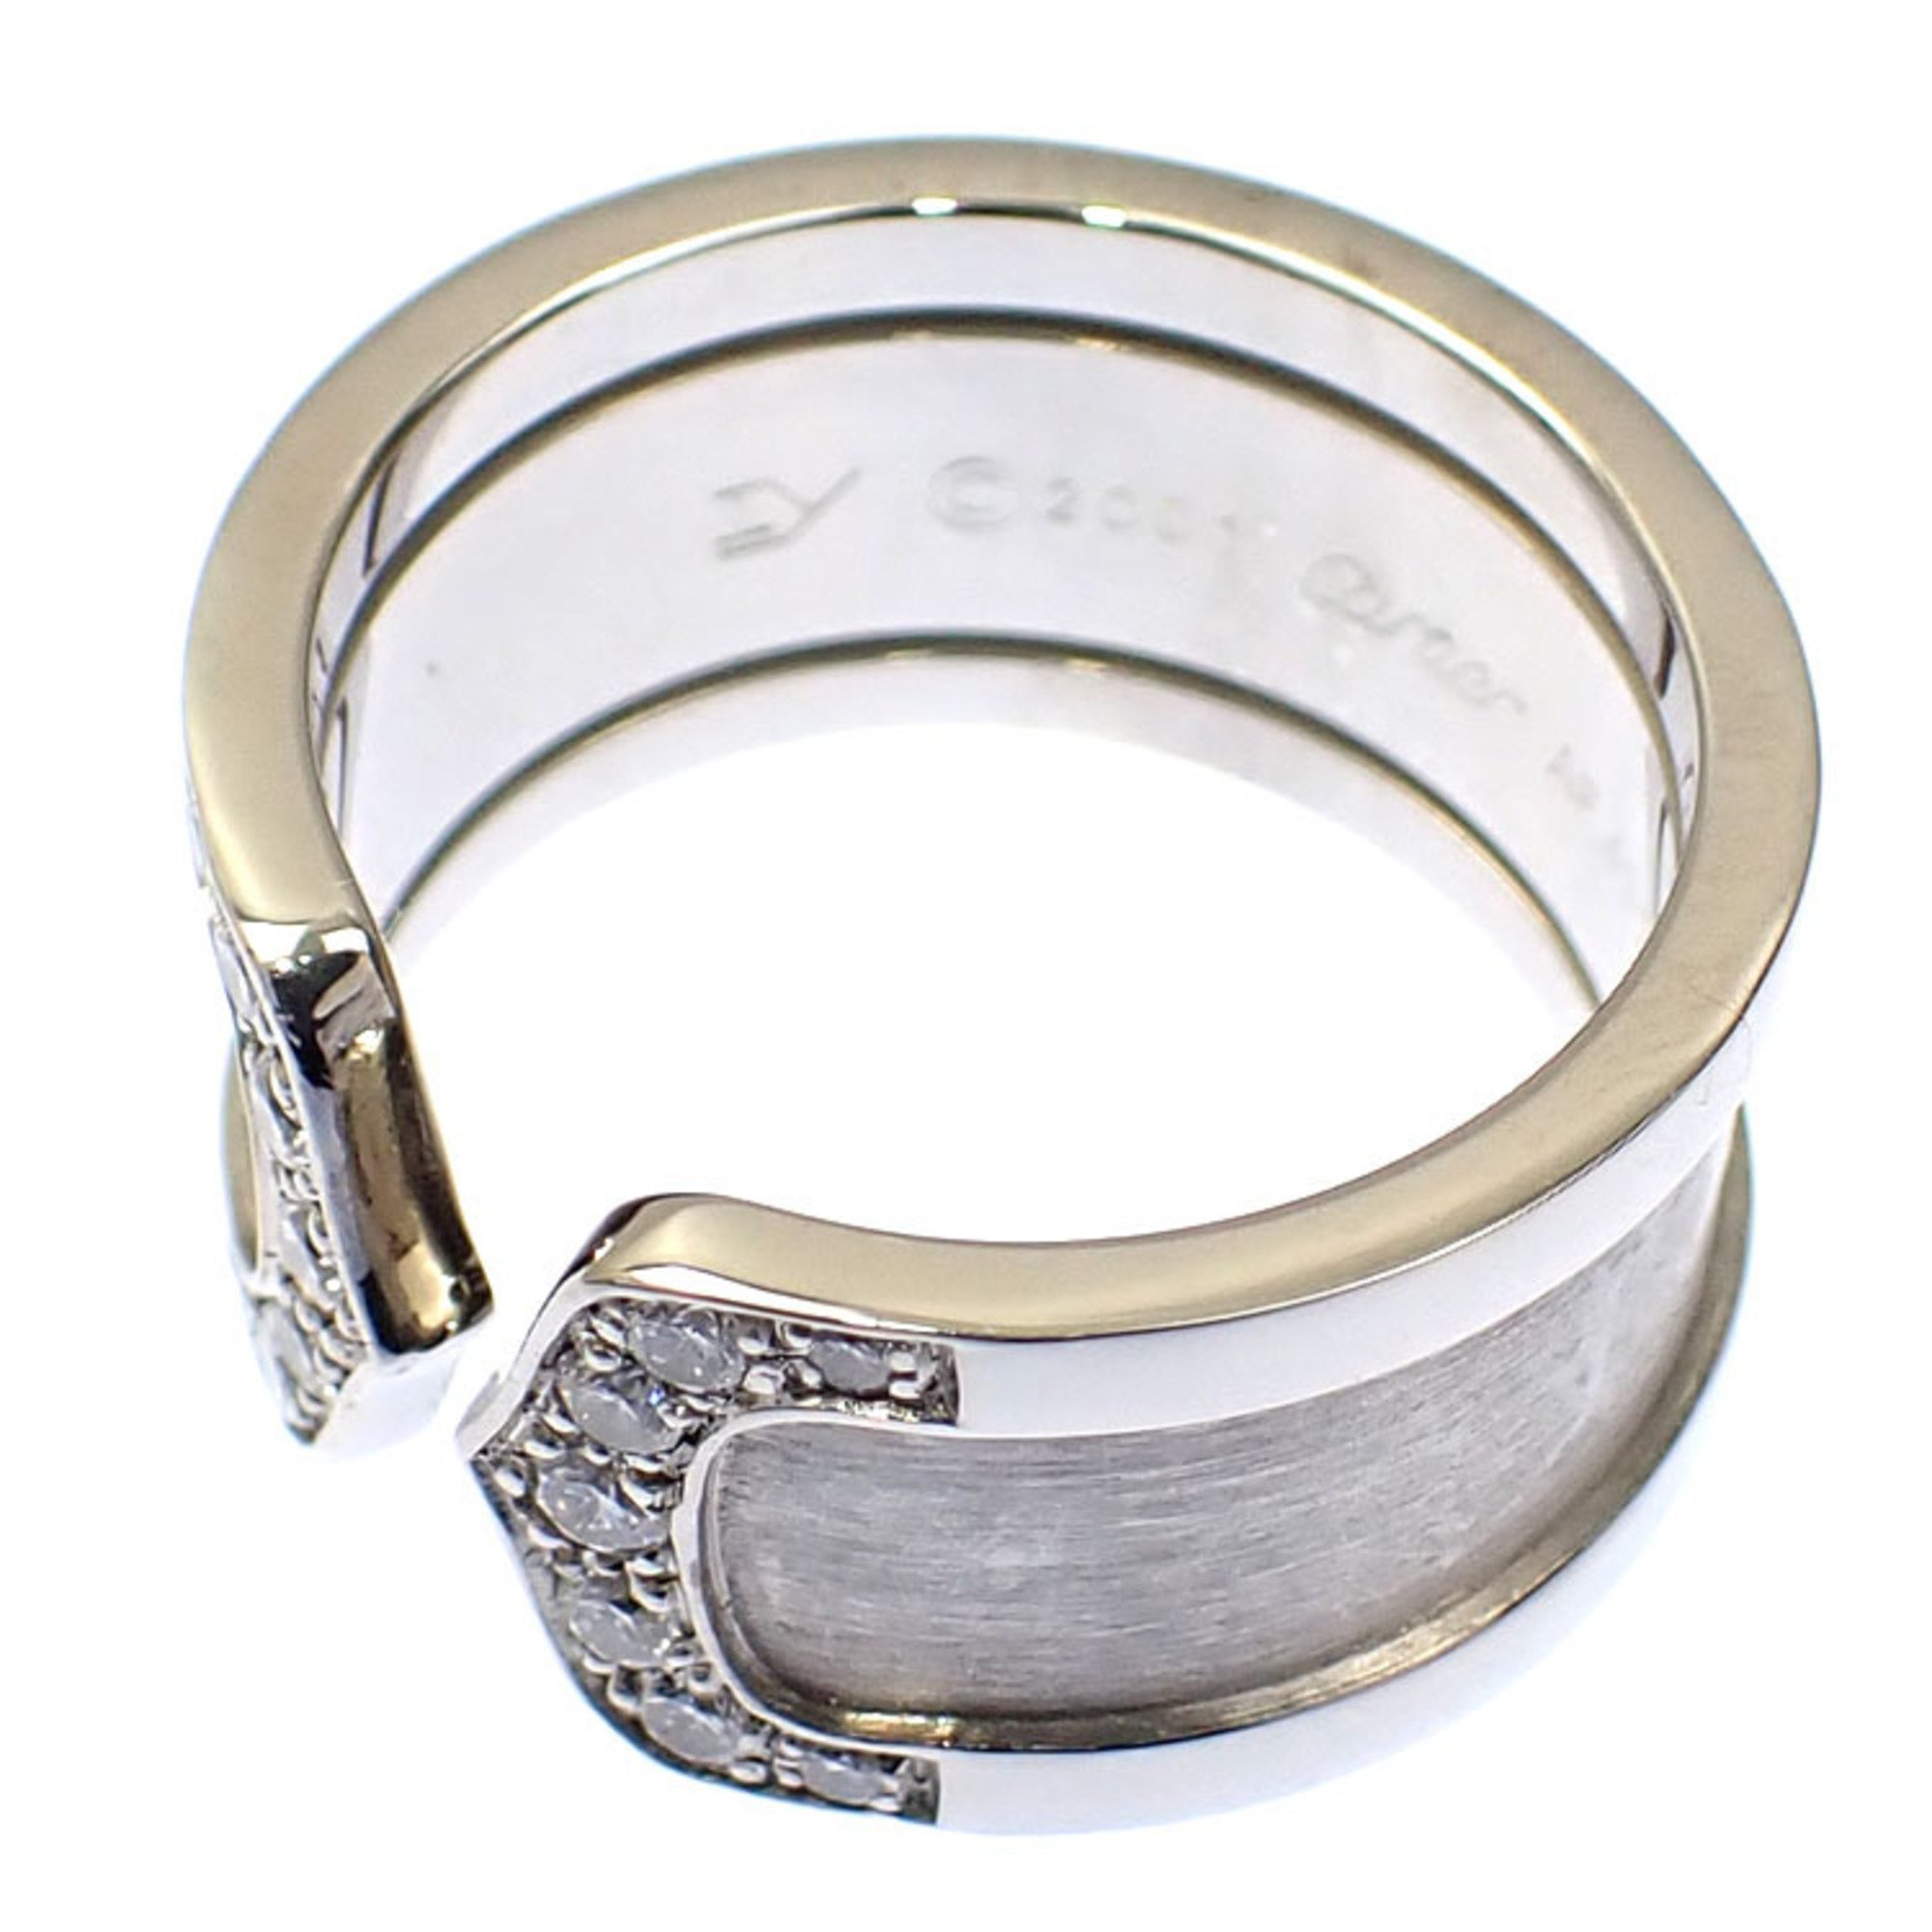 Cartier C2 Ring for Women Diamond K18WG Size 11 #52 11.1g 750 18K White Gold Sea-Do